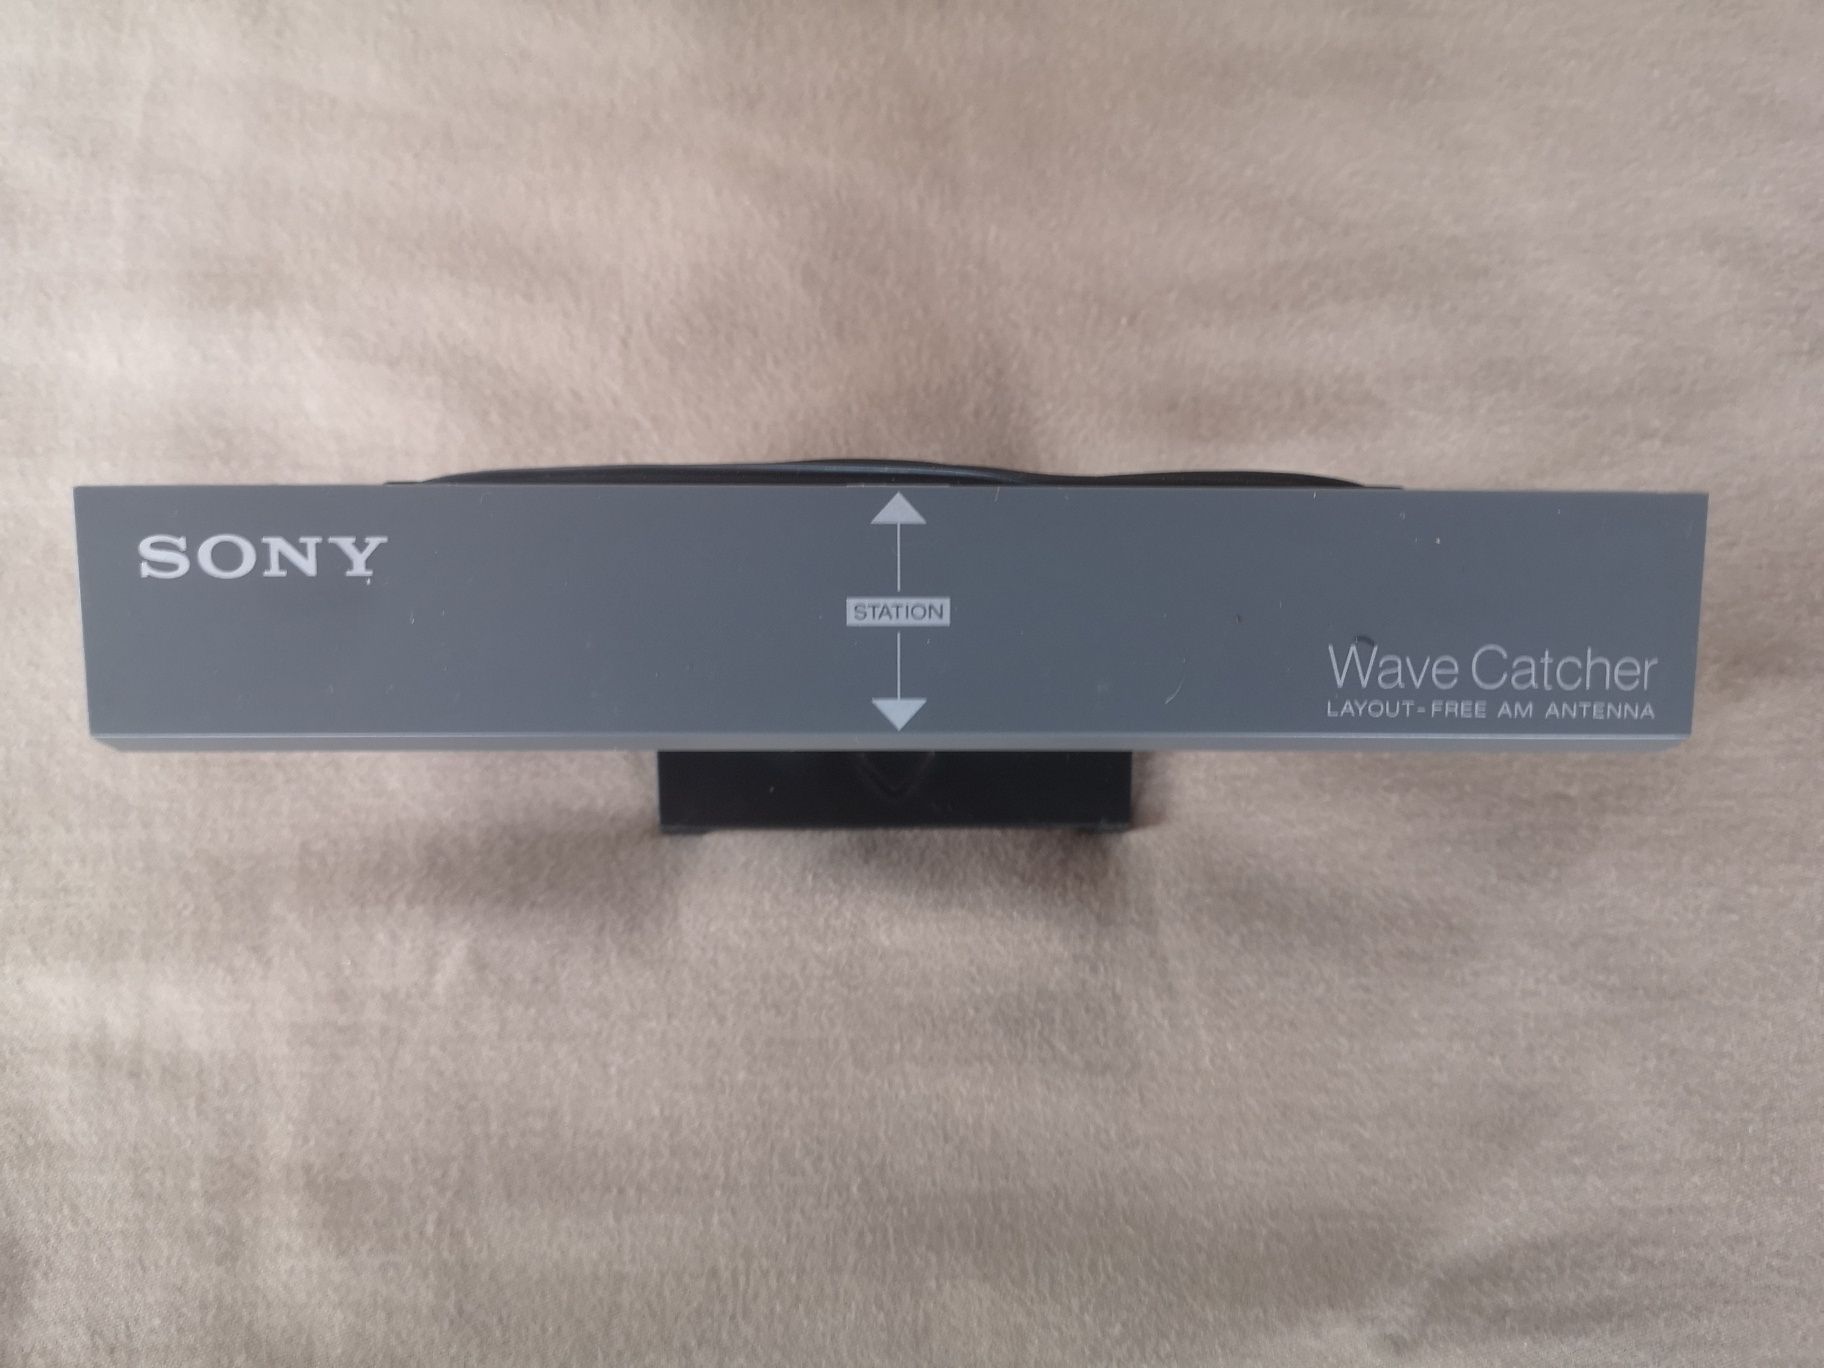 Sony Wave Catcher Antenna